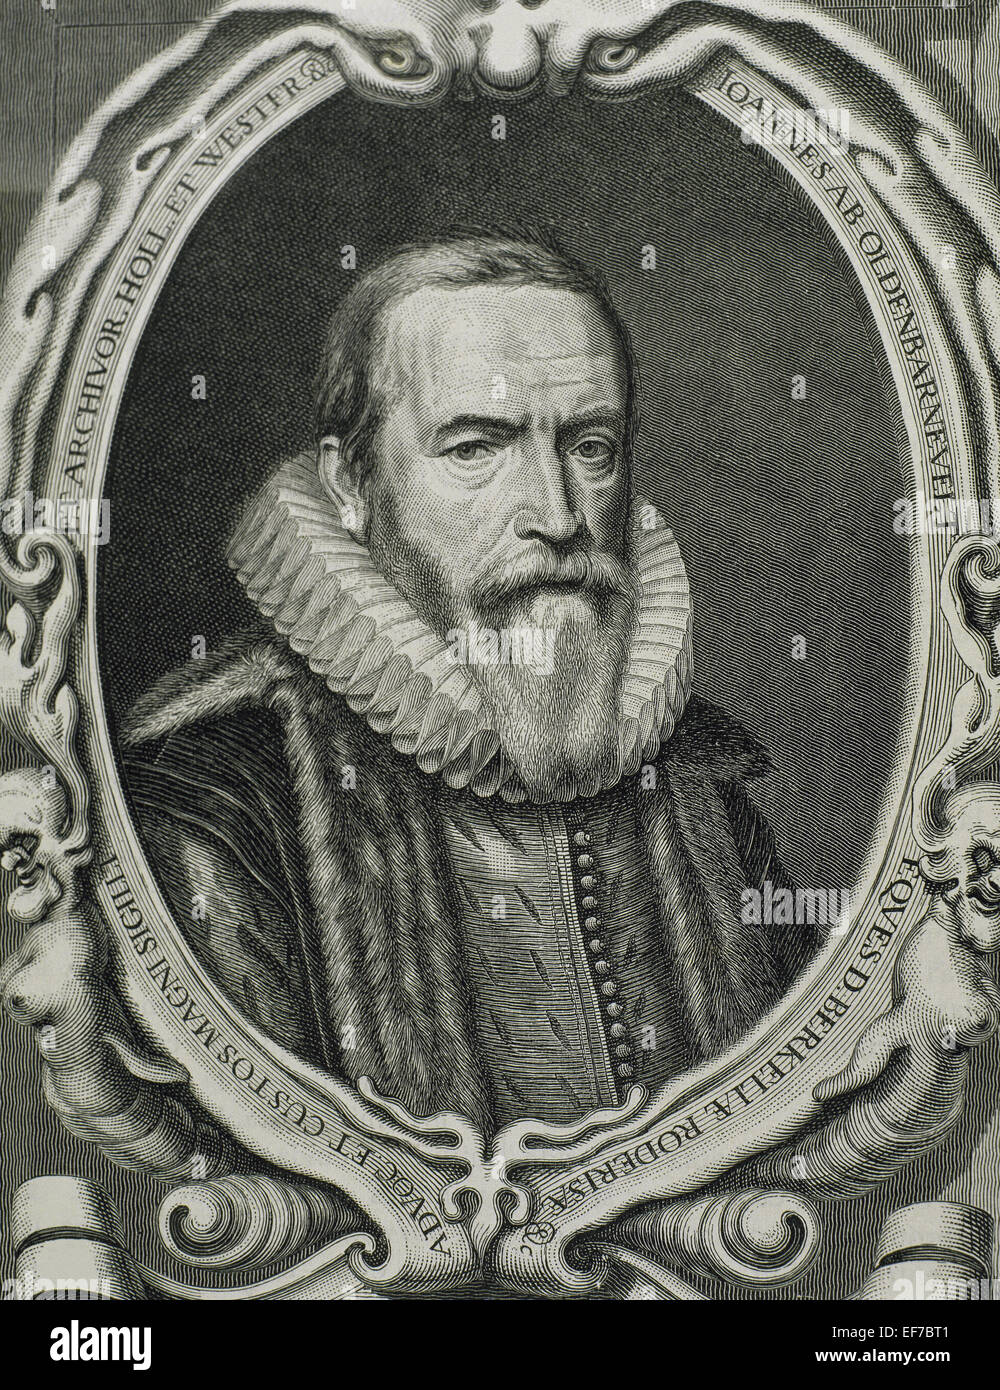 Johan van Oldenbarnevelt (1547 – 1619), Herr von Berkel En Rodenrijs (1600), Gunterstein (1611) und Bakkum (1613). Niederländischer Staatsmann, der eine wichtige in der niederländischen Kampf für Unabhängigkeit von Spanien Rolle. Porträt. Gravur. Stockfoto